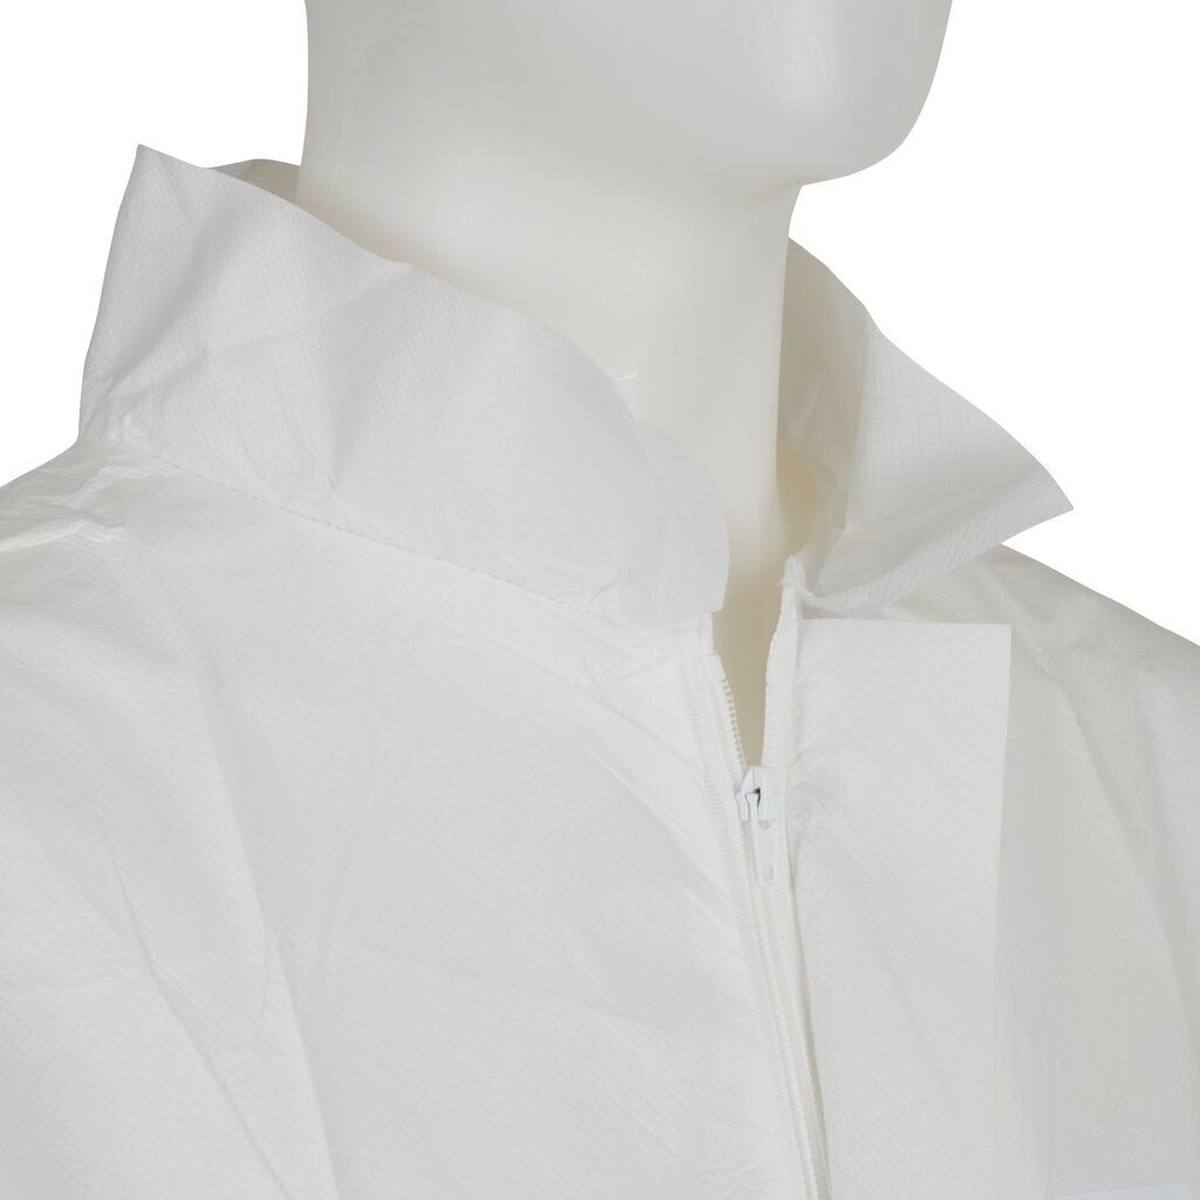 Manteau 3M 4440, blanc, taille L, particulièrement respirant, très léger, avec fermeture éclair, poignets tricotés